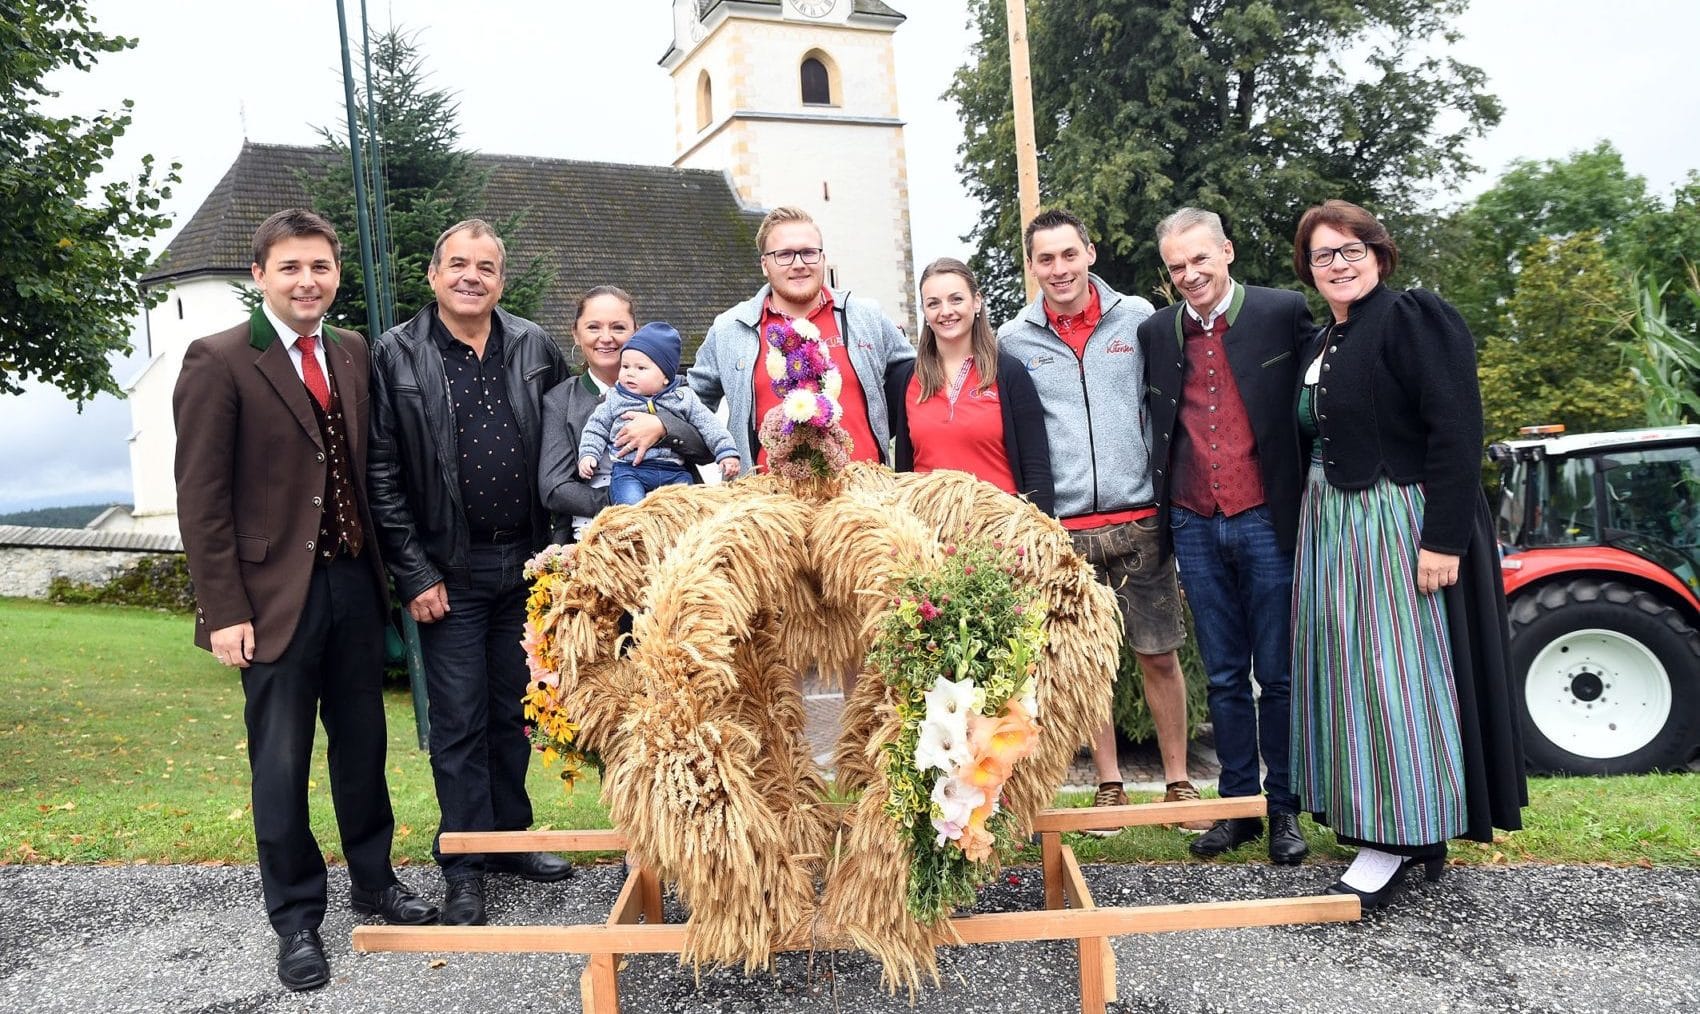 Unter der Leitung von Obmann Marvin Gollner veranstaltete die Landjugend Köstenberg ein Erntedankfest. 